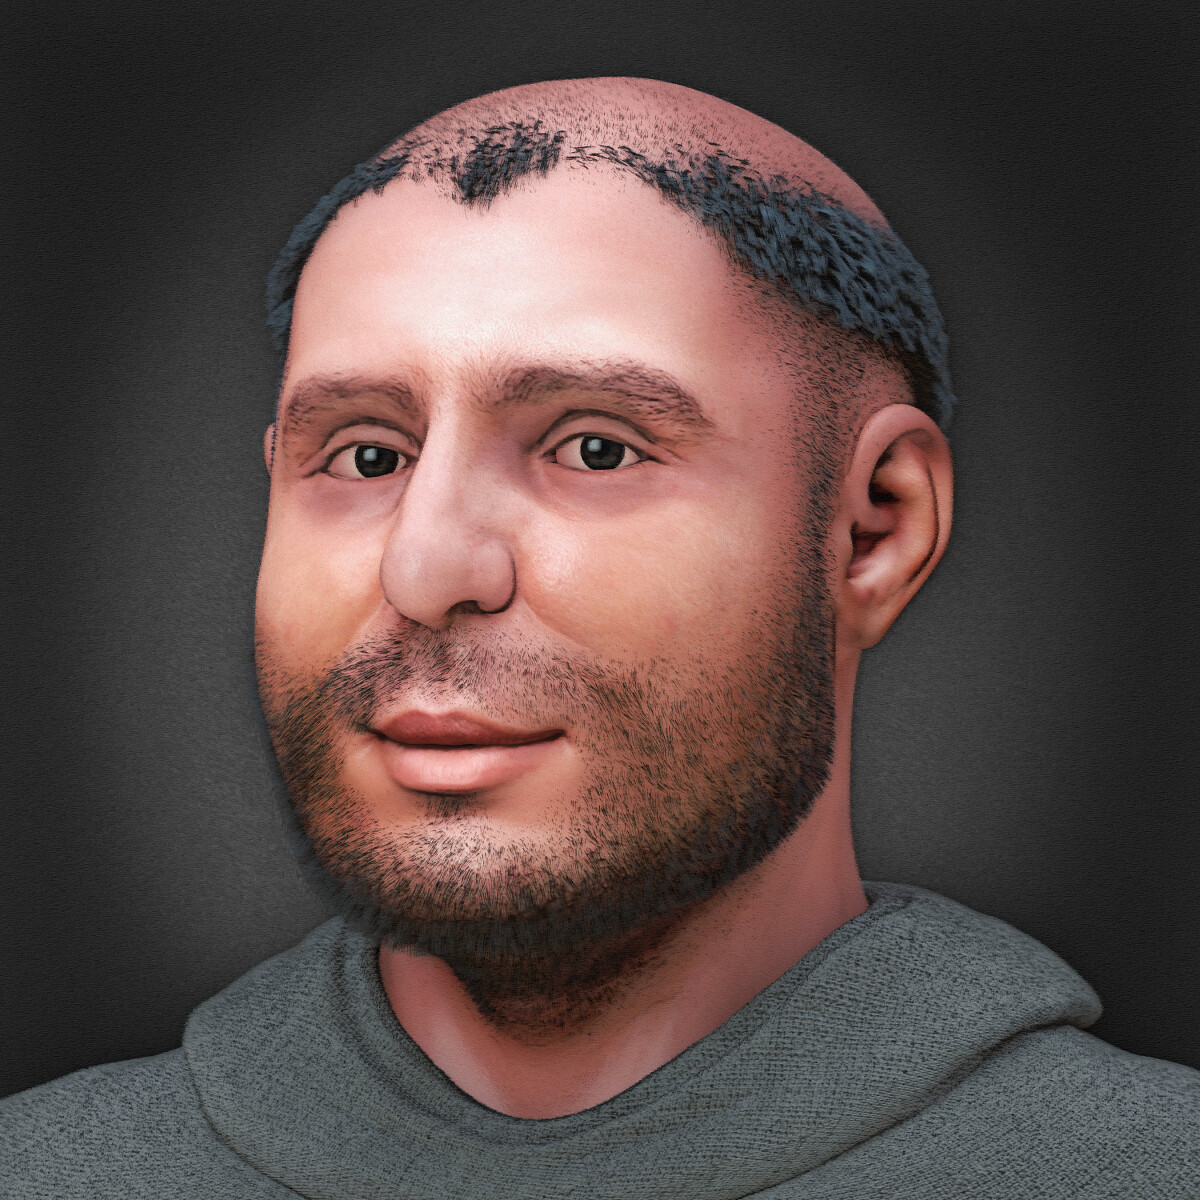 Rekonstrukcja twarzy św. Antoniego - Cicero Moraes, CC BY 3.0 www.creativecommons.org, via Wikimedia Commons